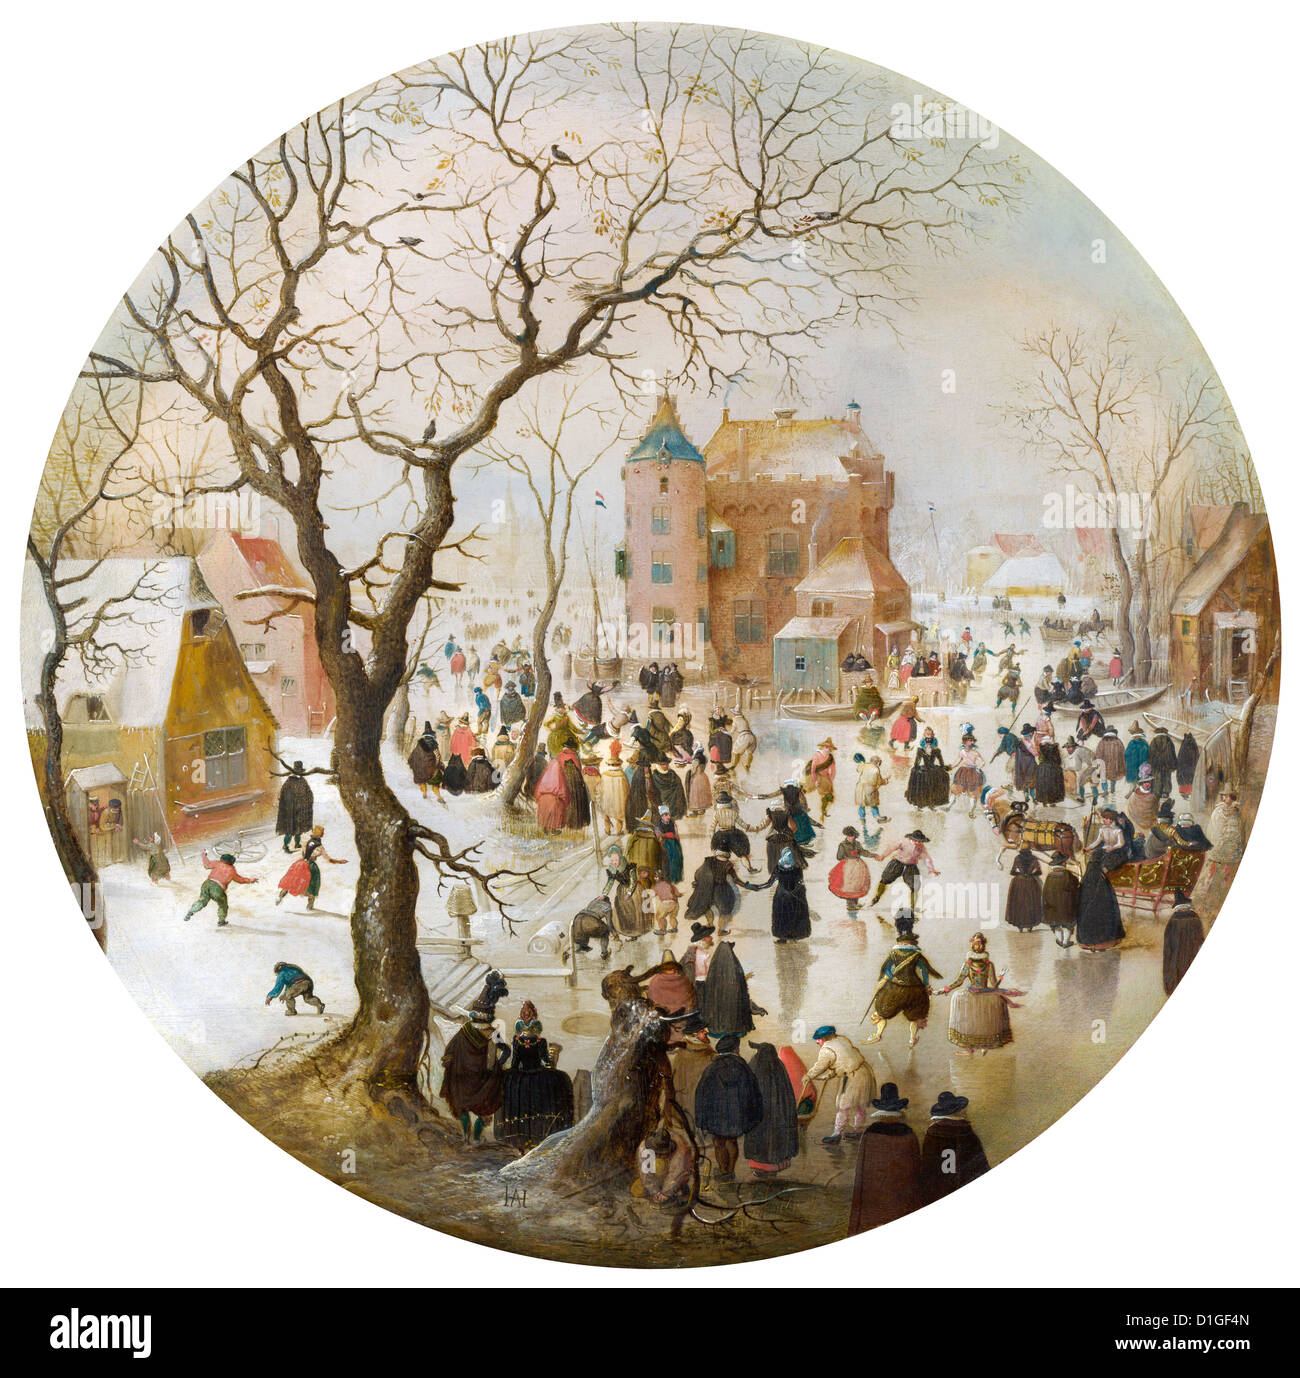 Hendrick Avercamp - una scena invernale con pattinatori nei pressi di un castello. La pittura di una scena olandese durante la Piccola era glaciale. Foto Stock